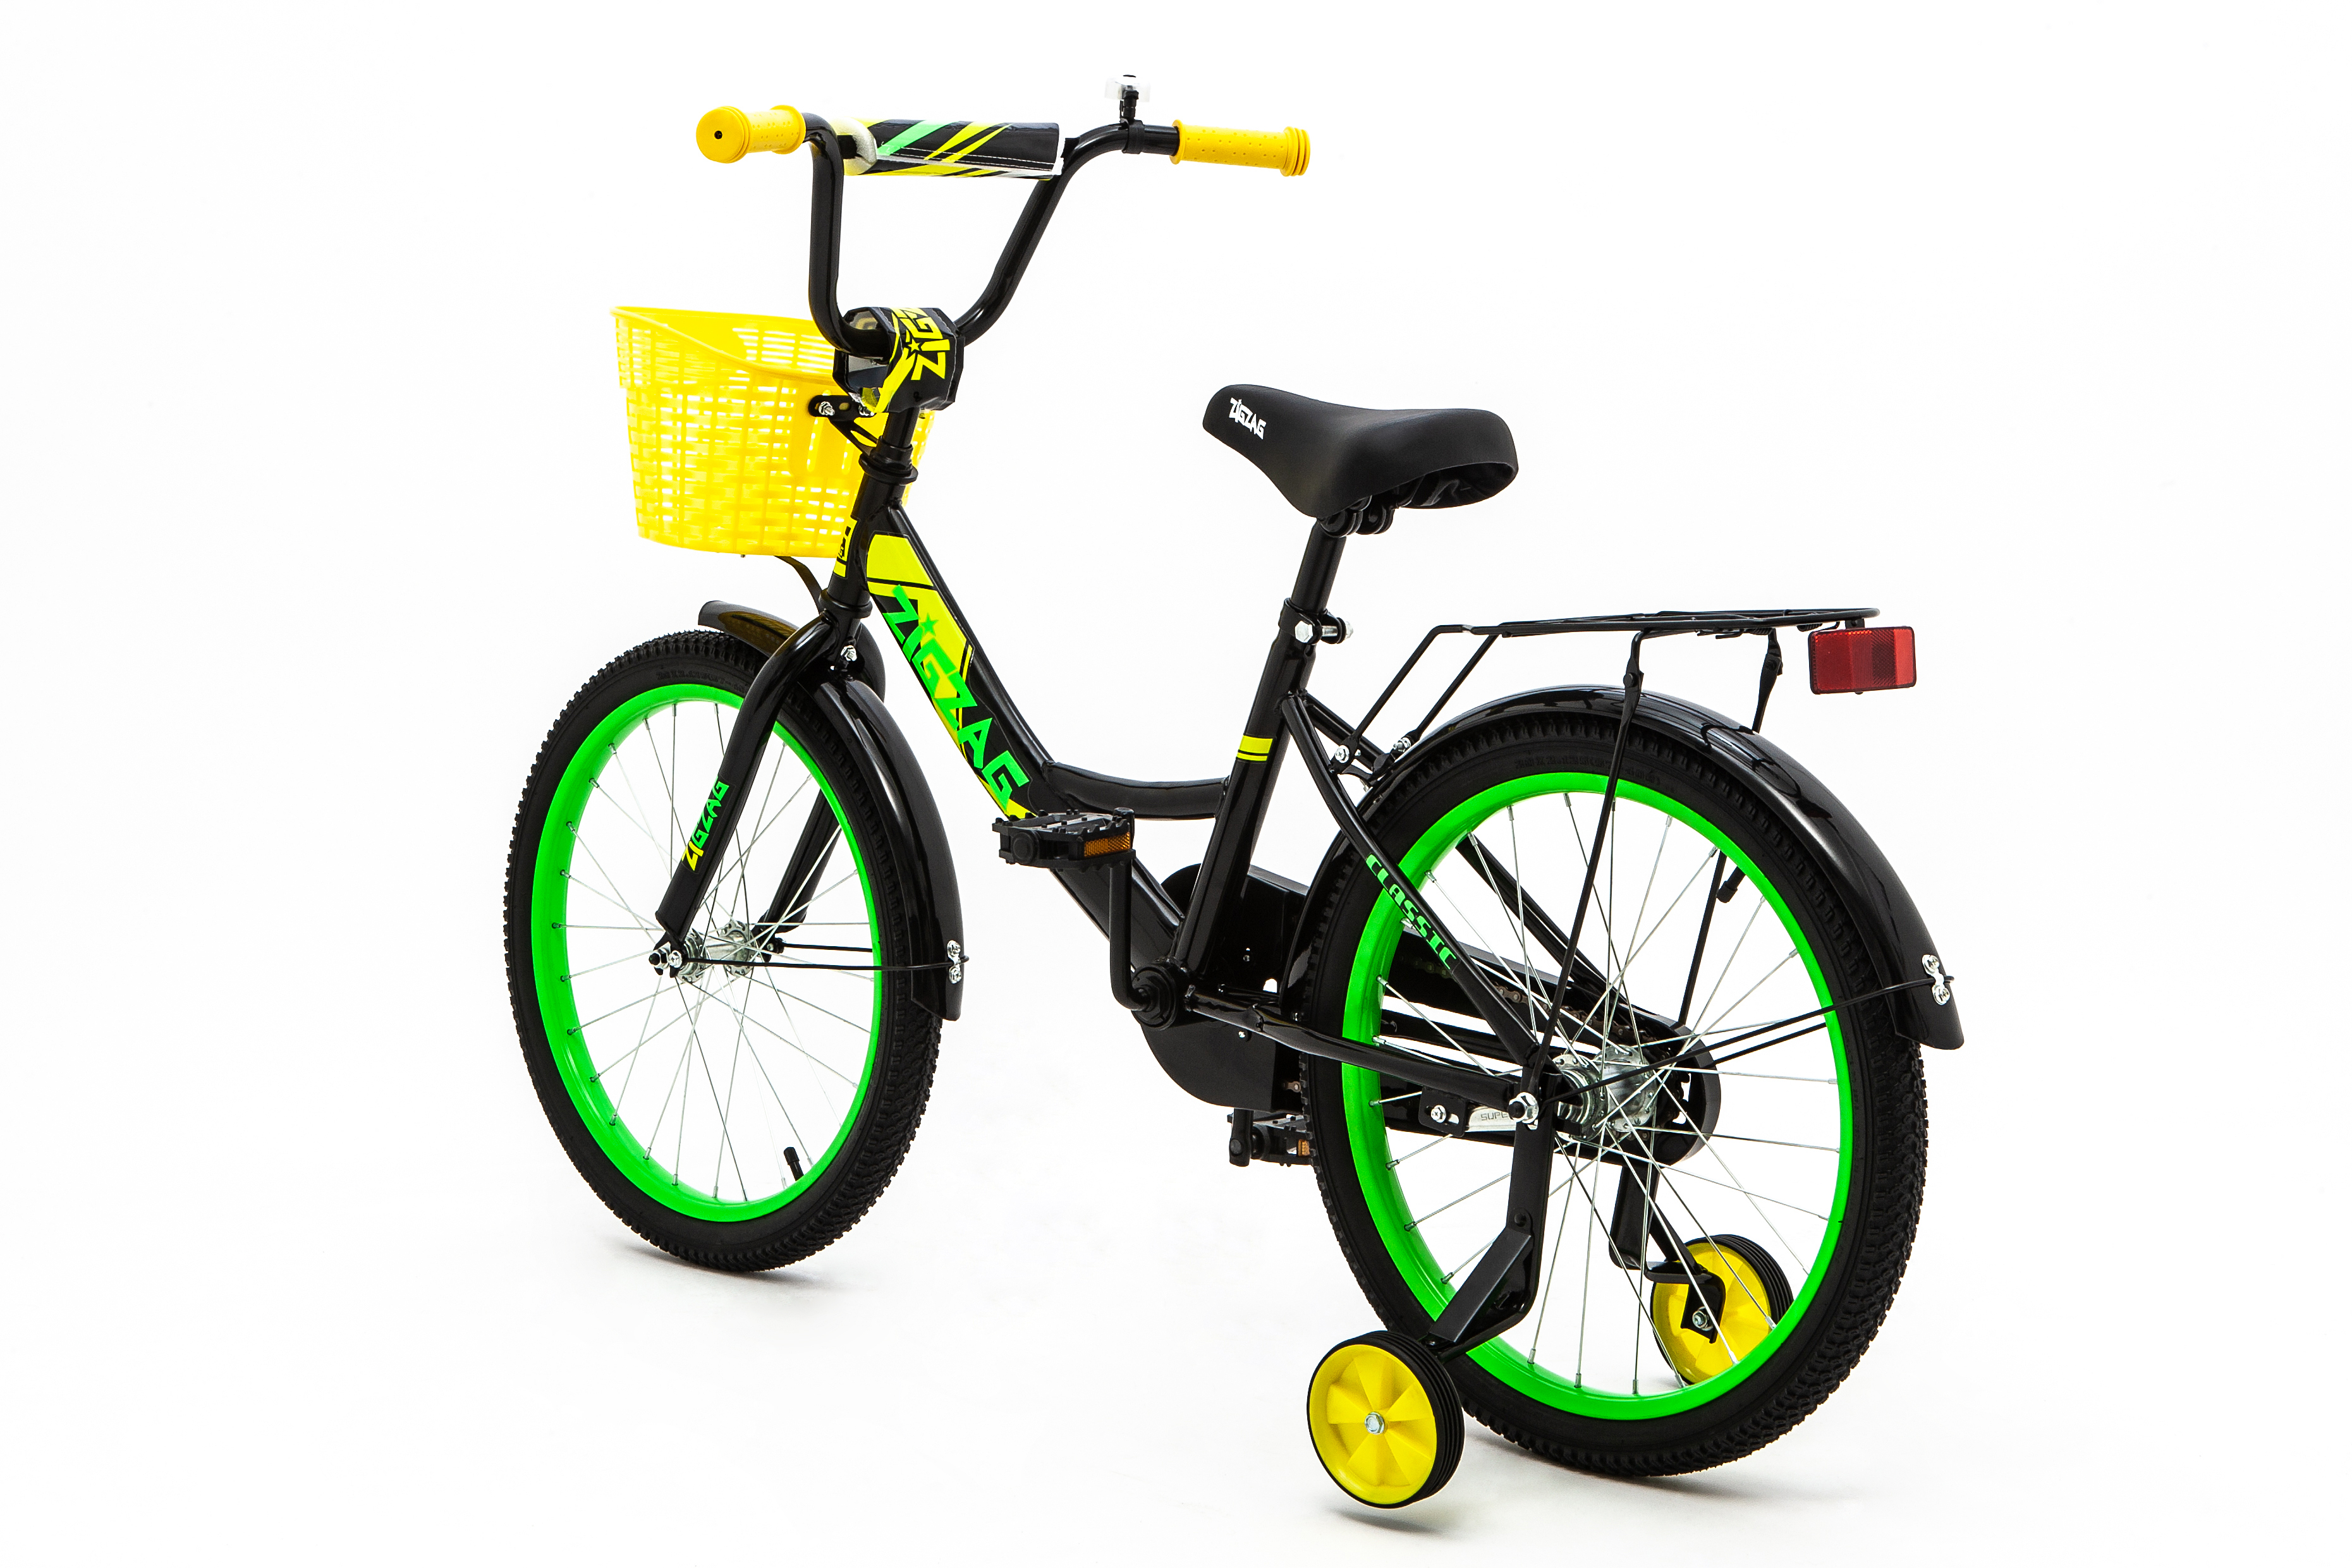 Велосипед ZigZag CLASSIC черный желтый зеленый 20 дюймов - фото 4